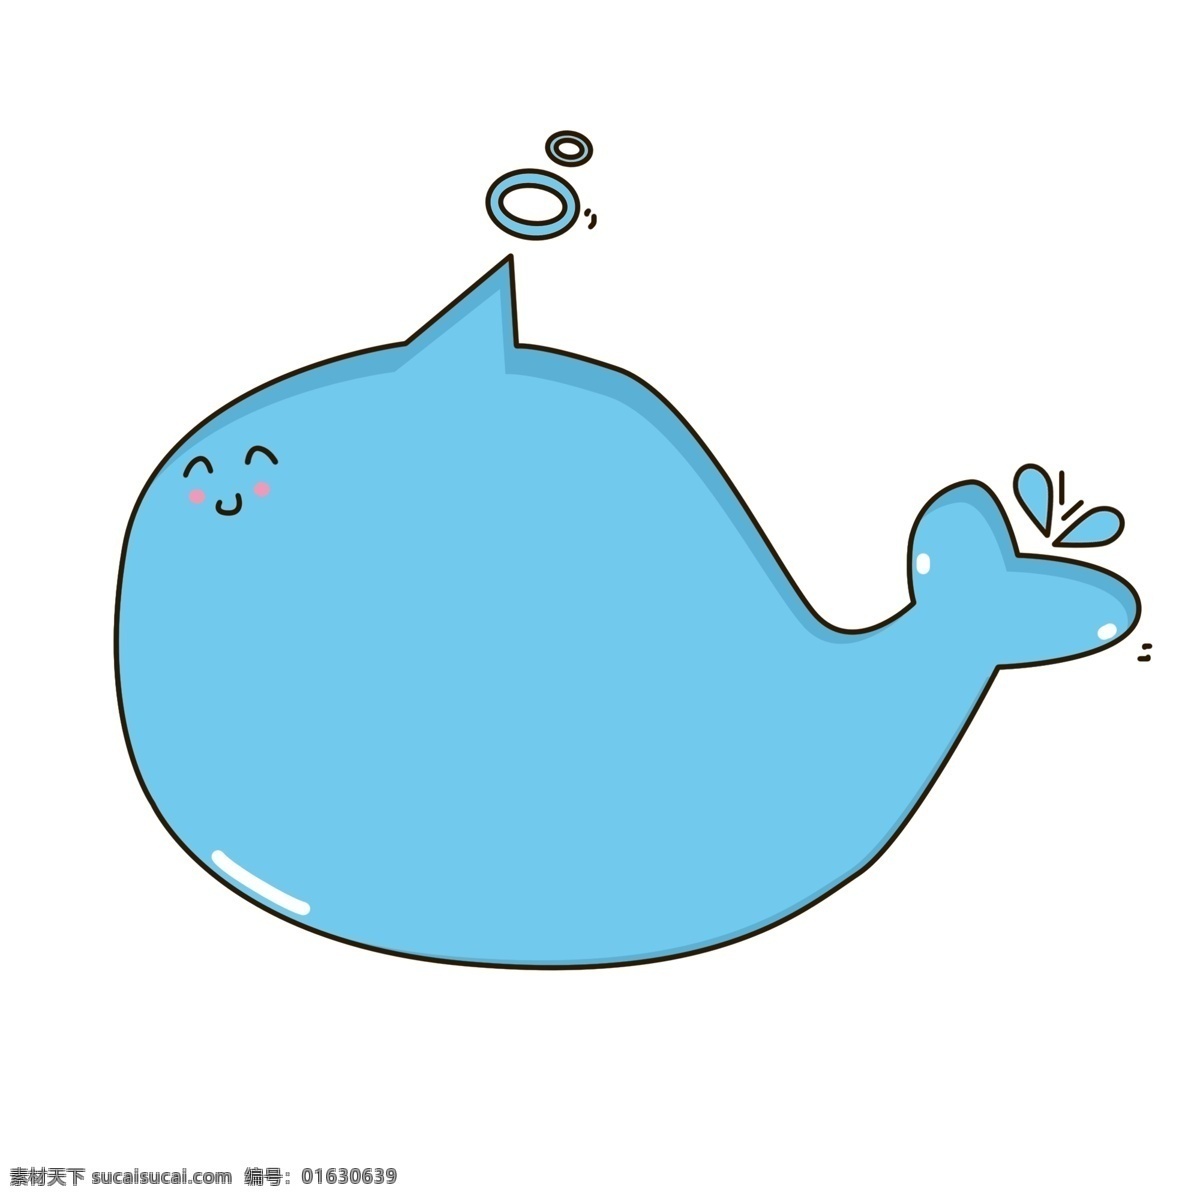 卡通 可爱 小 鲸鱼 对话框 卡通对话框 可爱边框 蓝色创意边框 小鲸鱼对话框 手绘边框